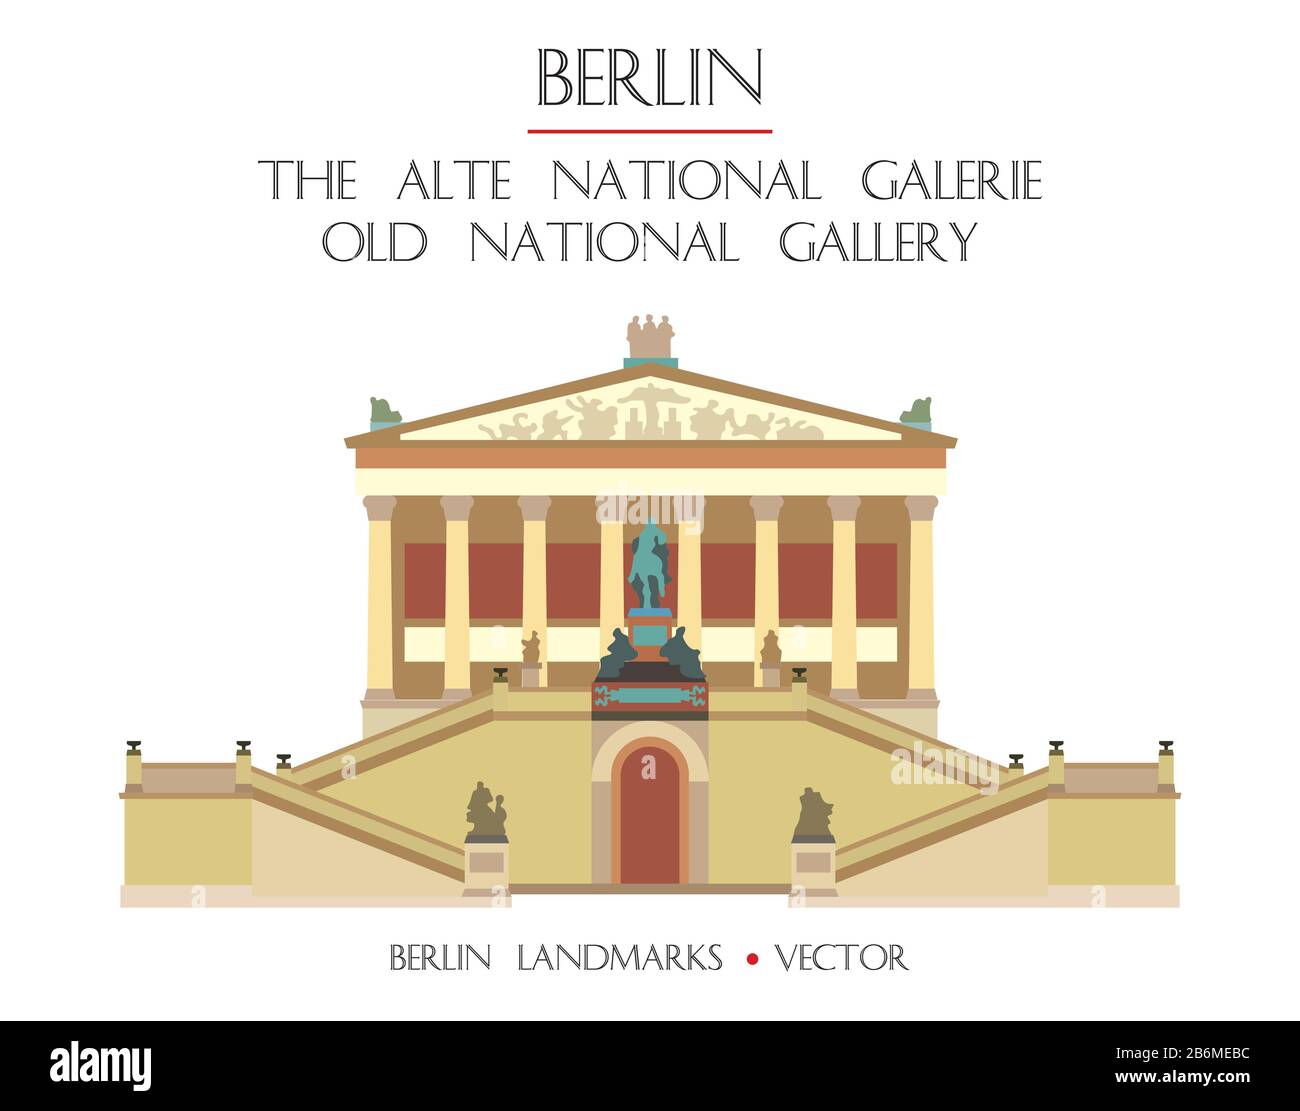 Vecteur coloré Old National Gallery (la galerie nationale Alte) vue de face, célèbre monument de Berlin, Allemagne. Illustration plate vectorielle isolée sur Illustration de Vecteur